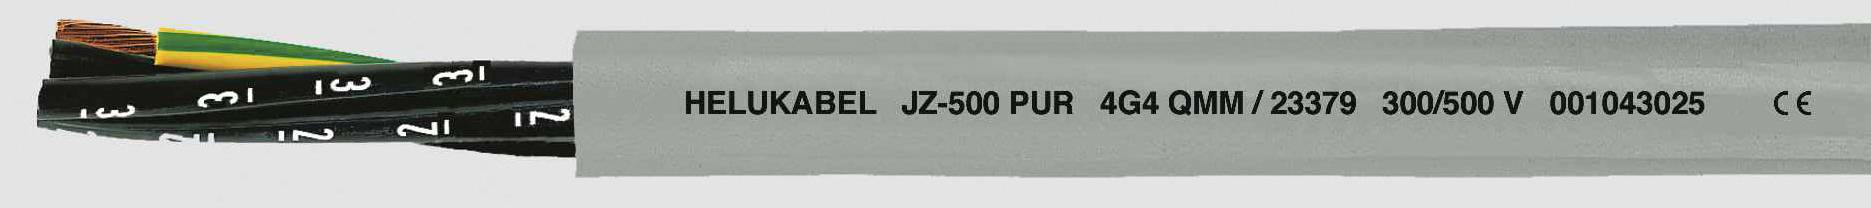 HELUKABEL JZ-500 PUR Steuerleitung 3 G 1.50 mm² Grau 23361-1000 1000 m